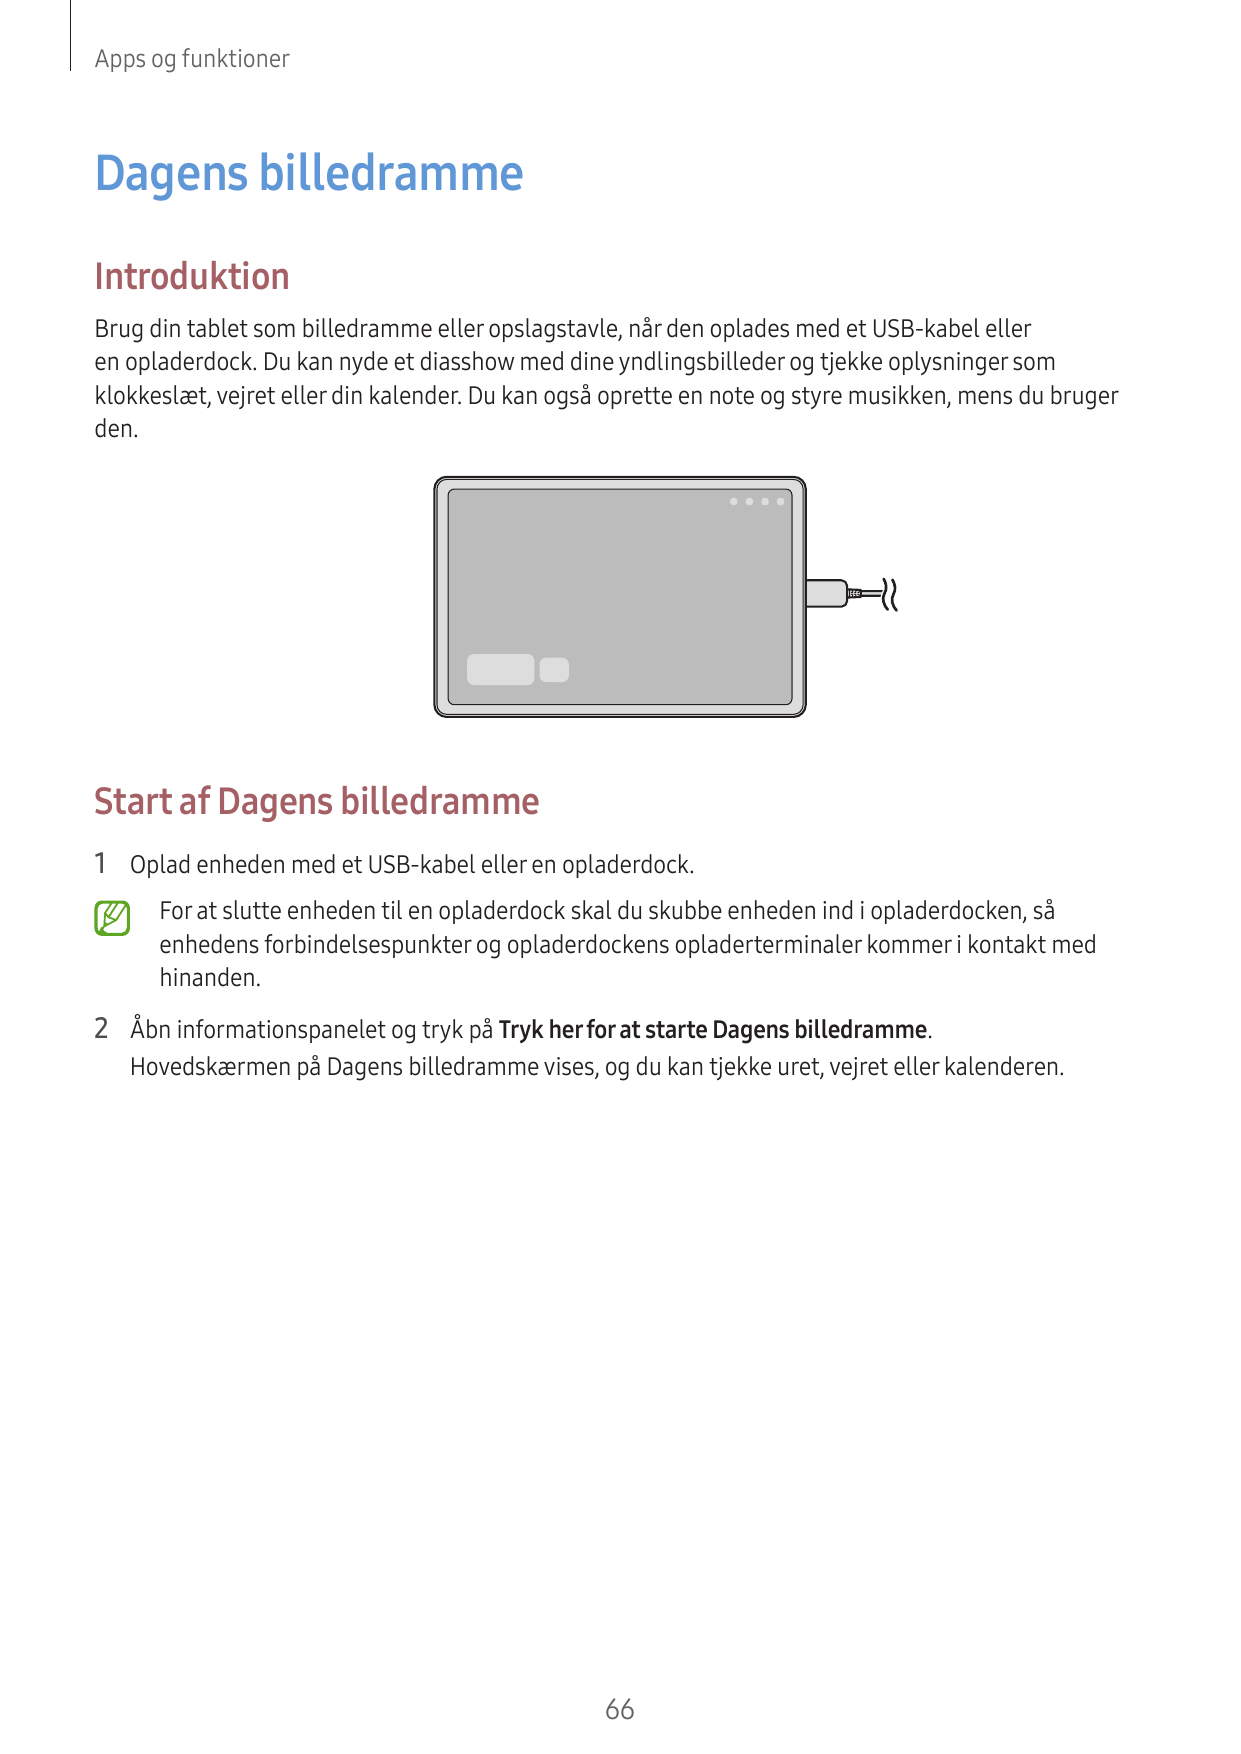 Apps og funktionerDagens billedrammeIntroduktionBrug din tablet som billedramme eller opslagstavle, når den oplades med et USB-k